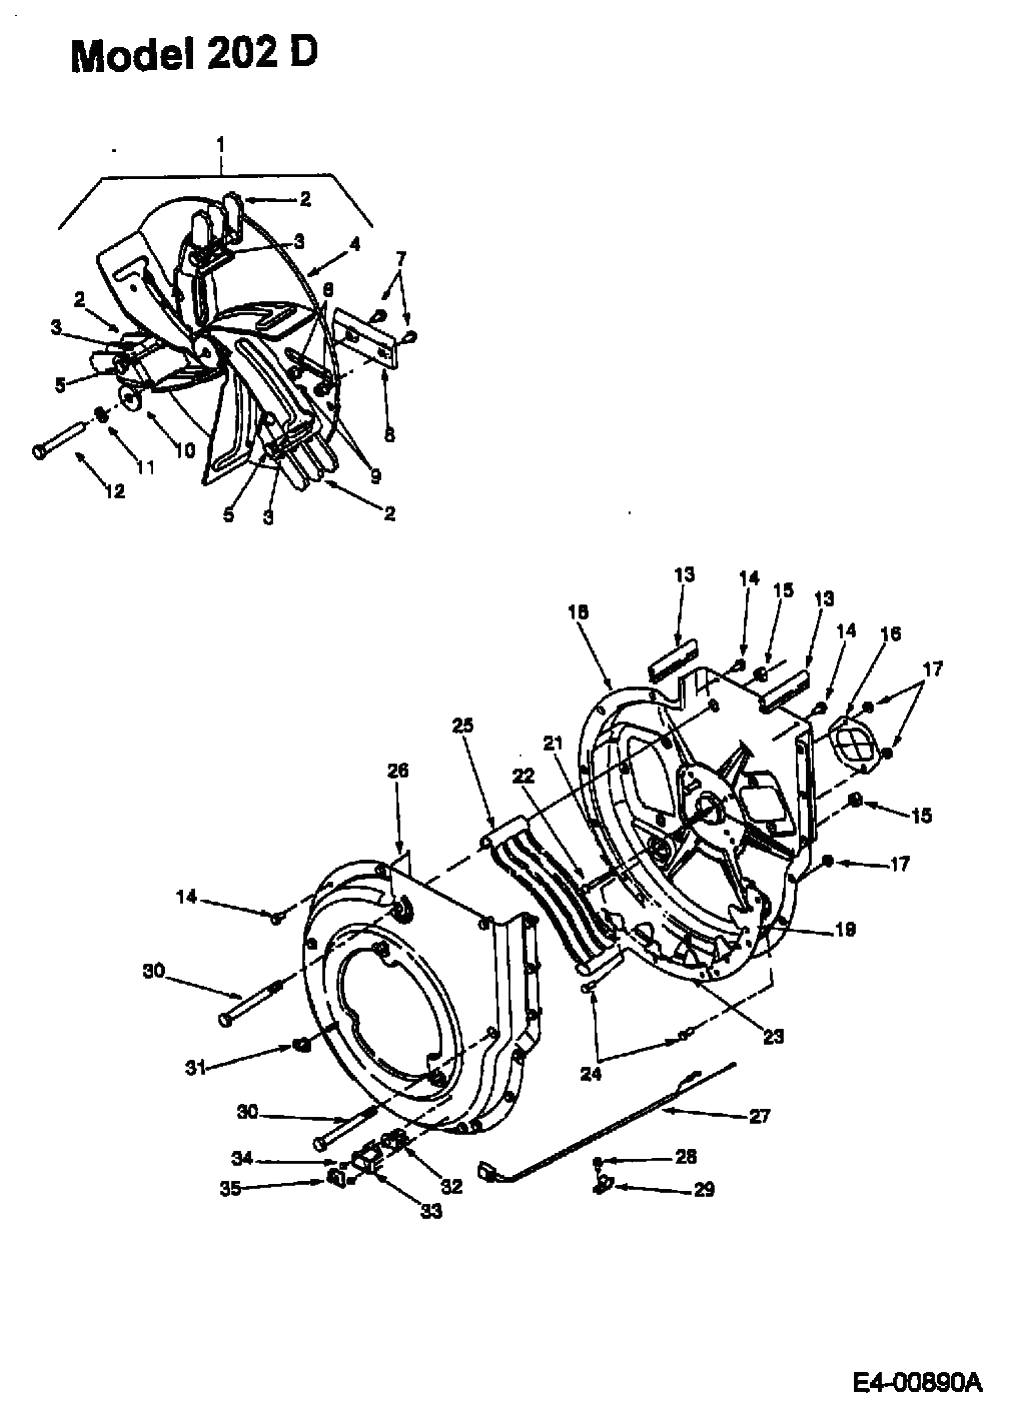 MTD Артикул 24A-202D678 (год выпуска 2001). Рабочее колесо с лопастями